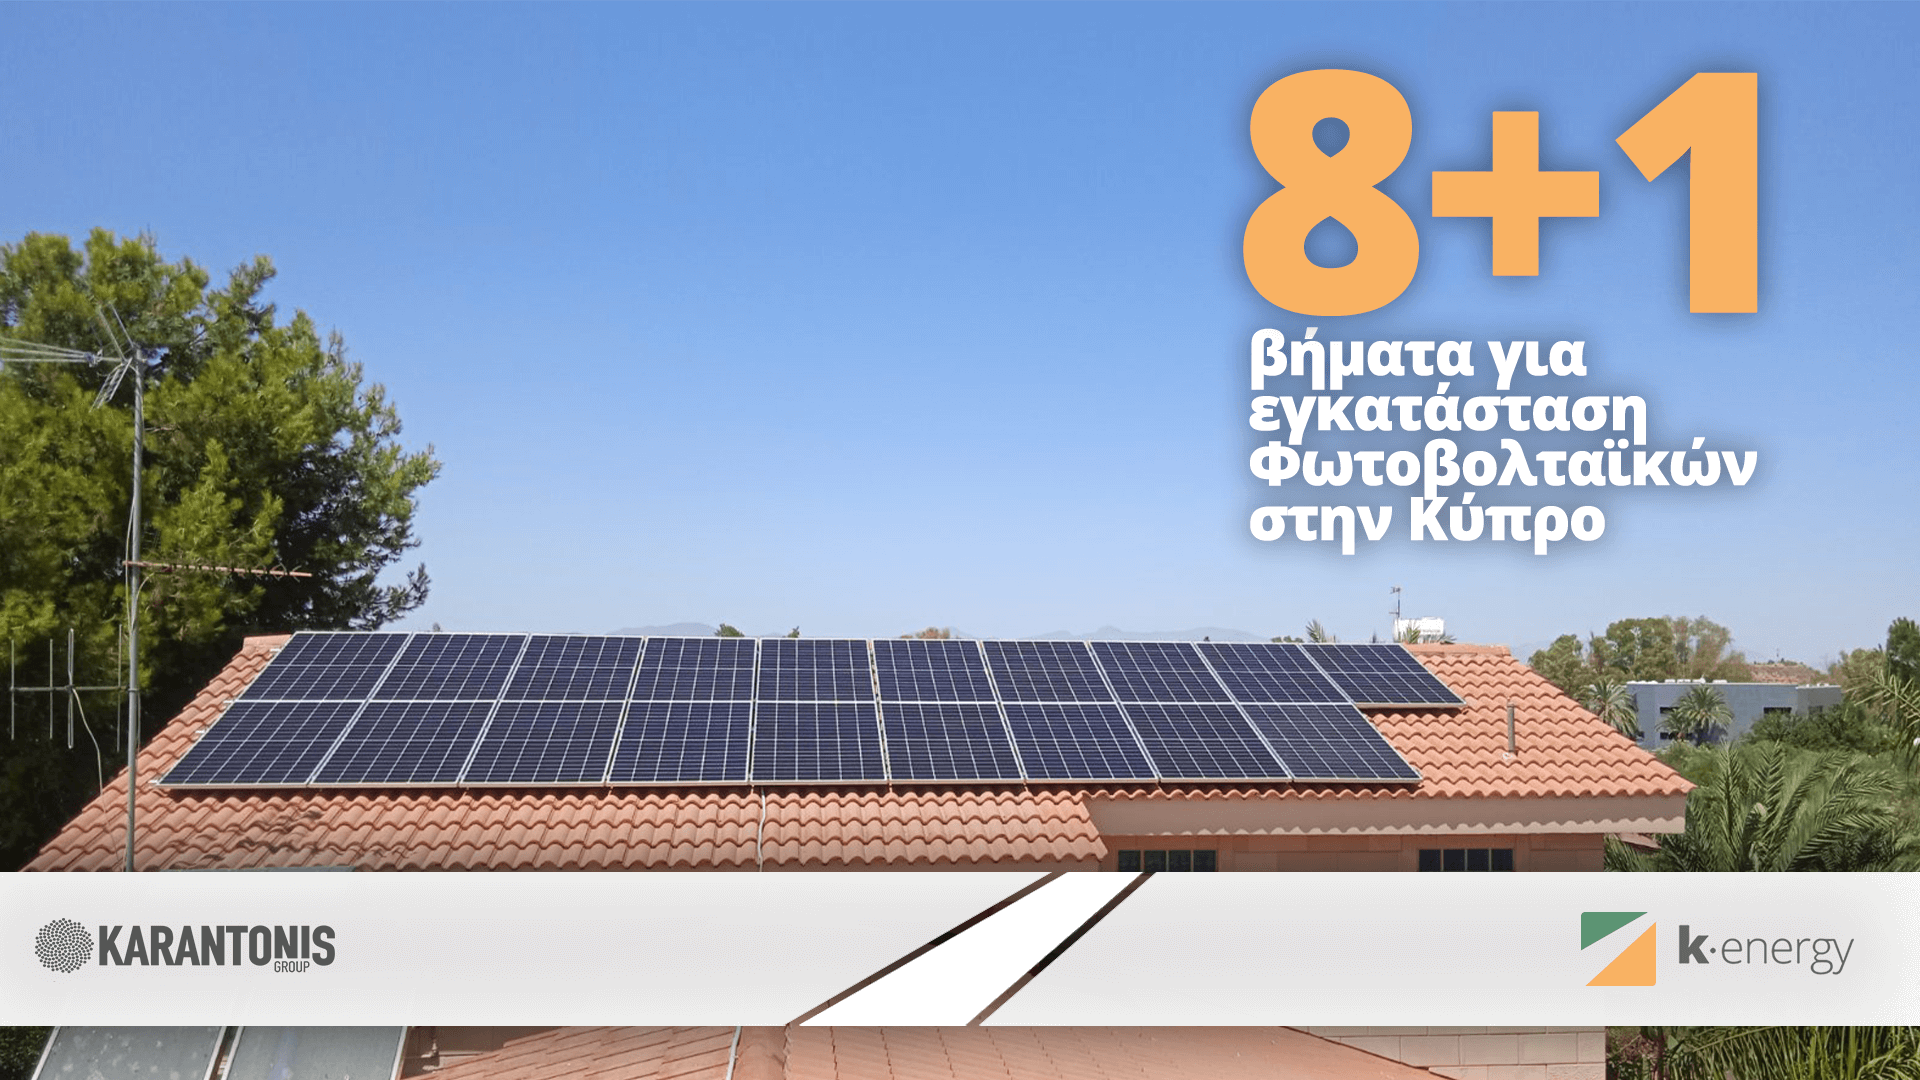 8+1 βήματα για εγκατάσταση Φωτοβολταϊκών στην Κύπρο